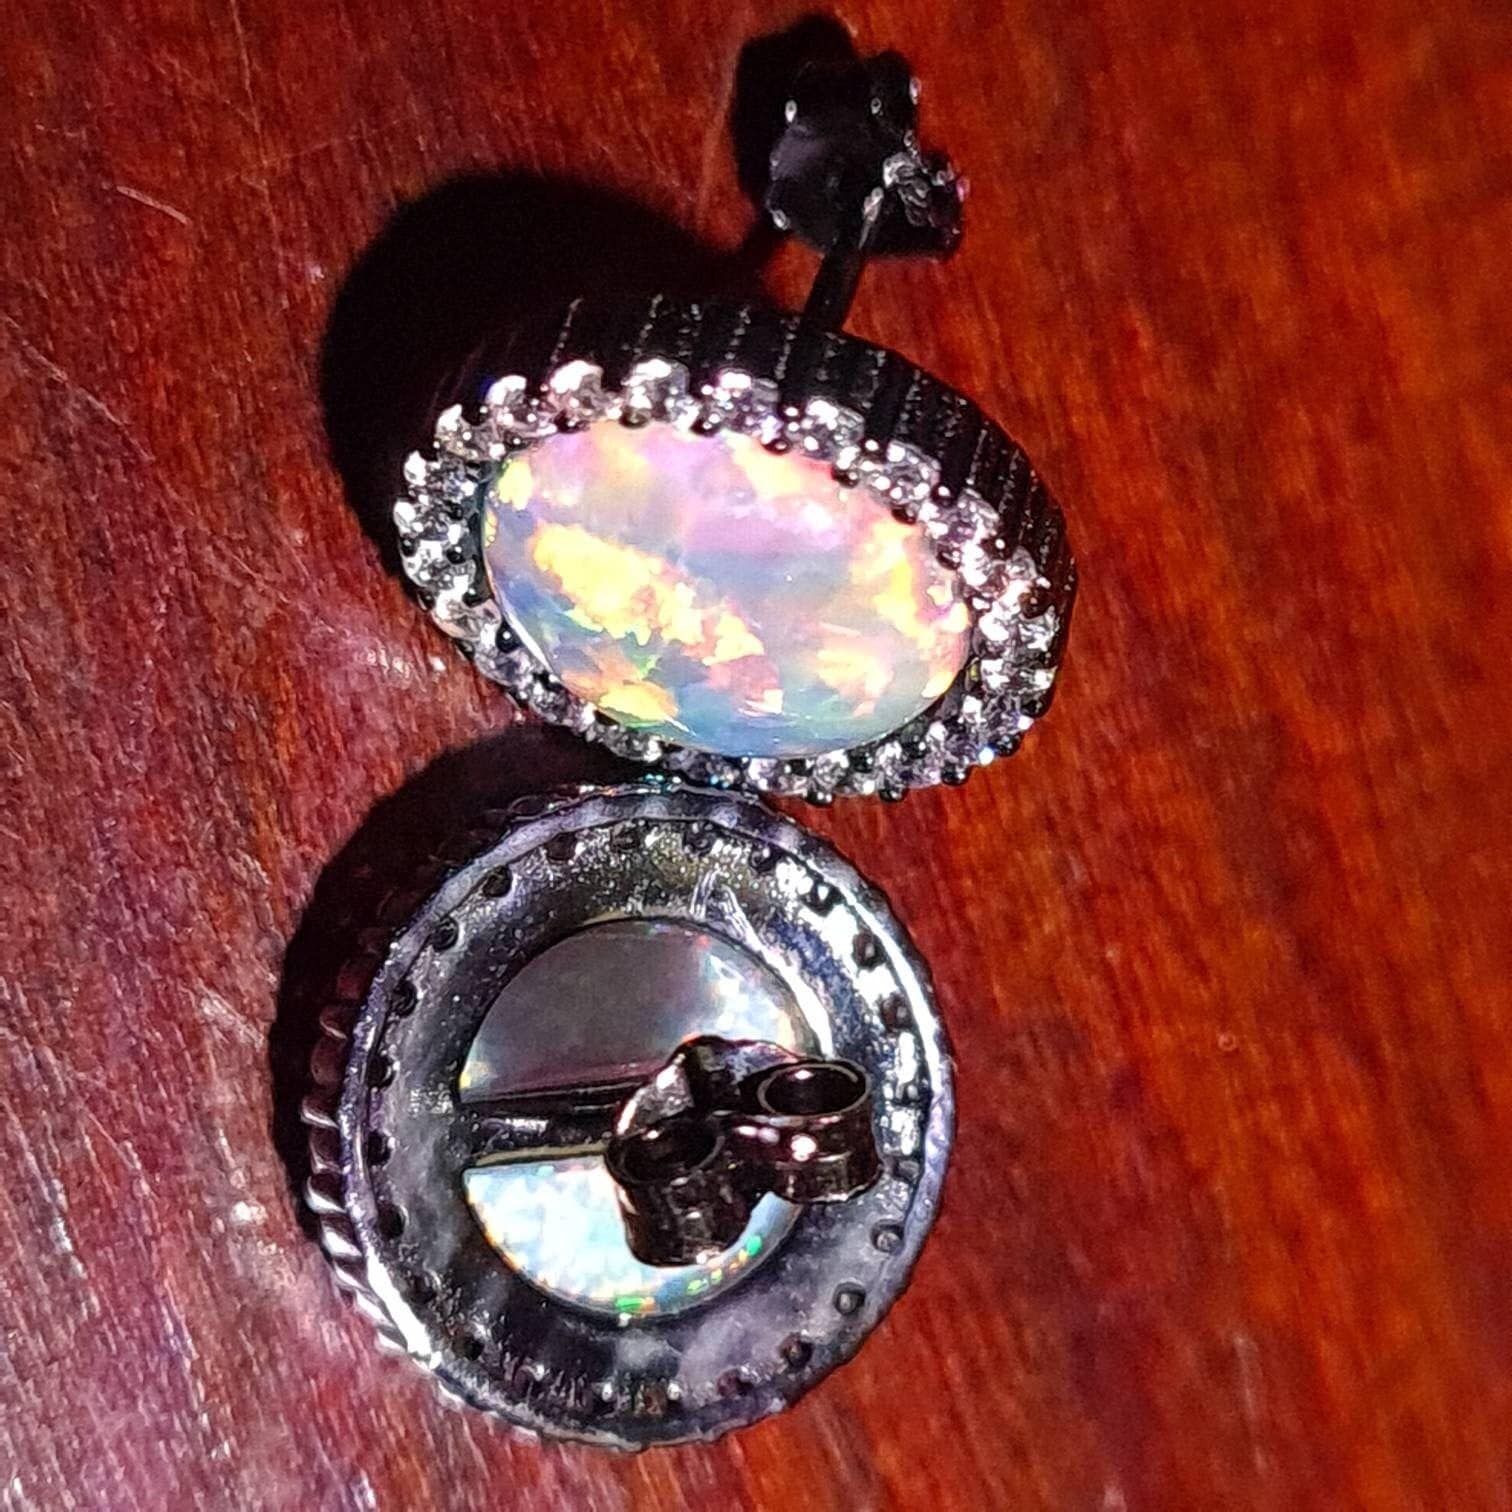 Ethiopian Fire Opal, Welo Opal, 12mm Round Shape CZ Stud Earrings in Black Rhodium 925 Sterling Silver AAA Fiery Opal Elegant Dainty Earring